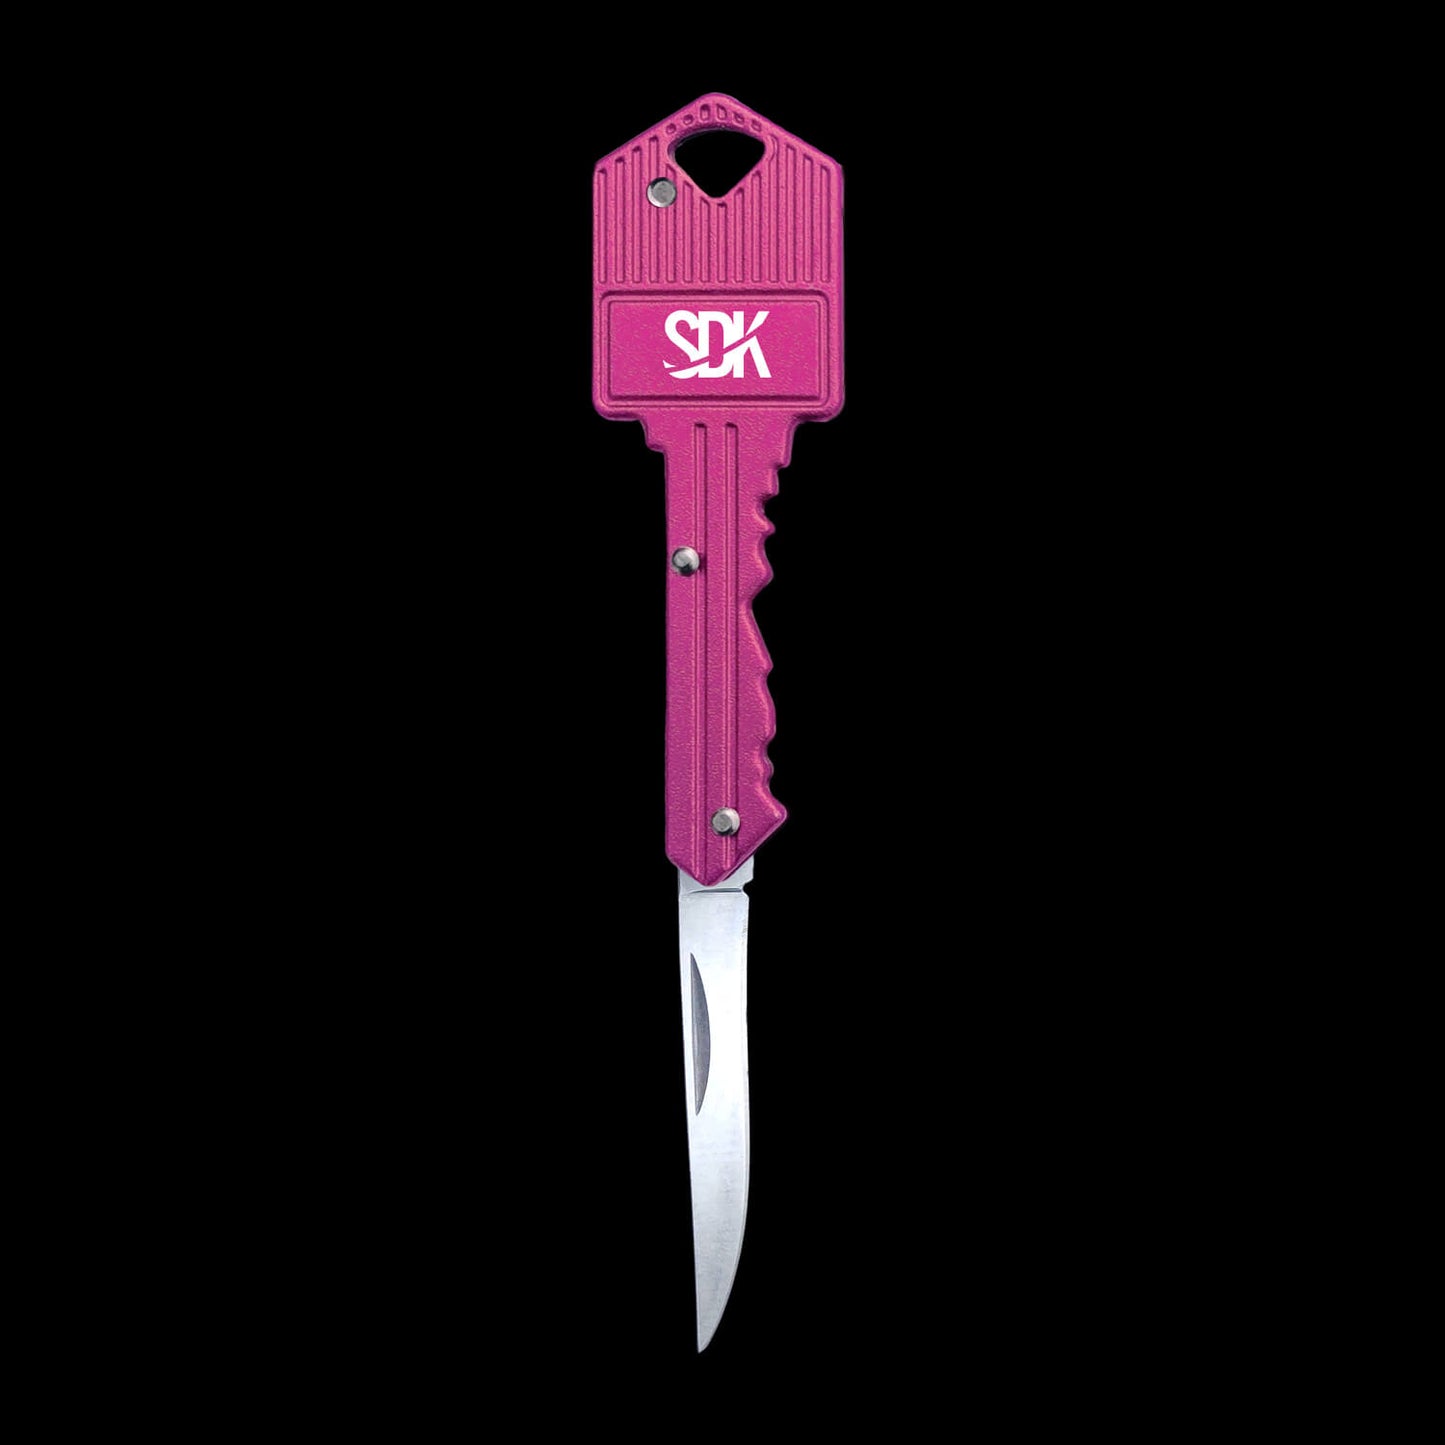 SDK Key Knife Pink, open position (stainless steel key-shaped flip knife)